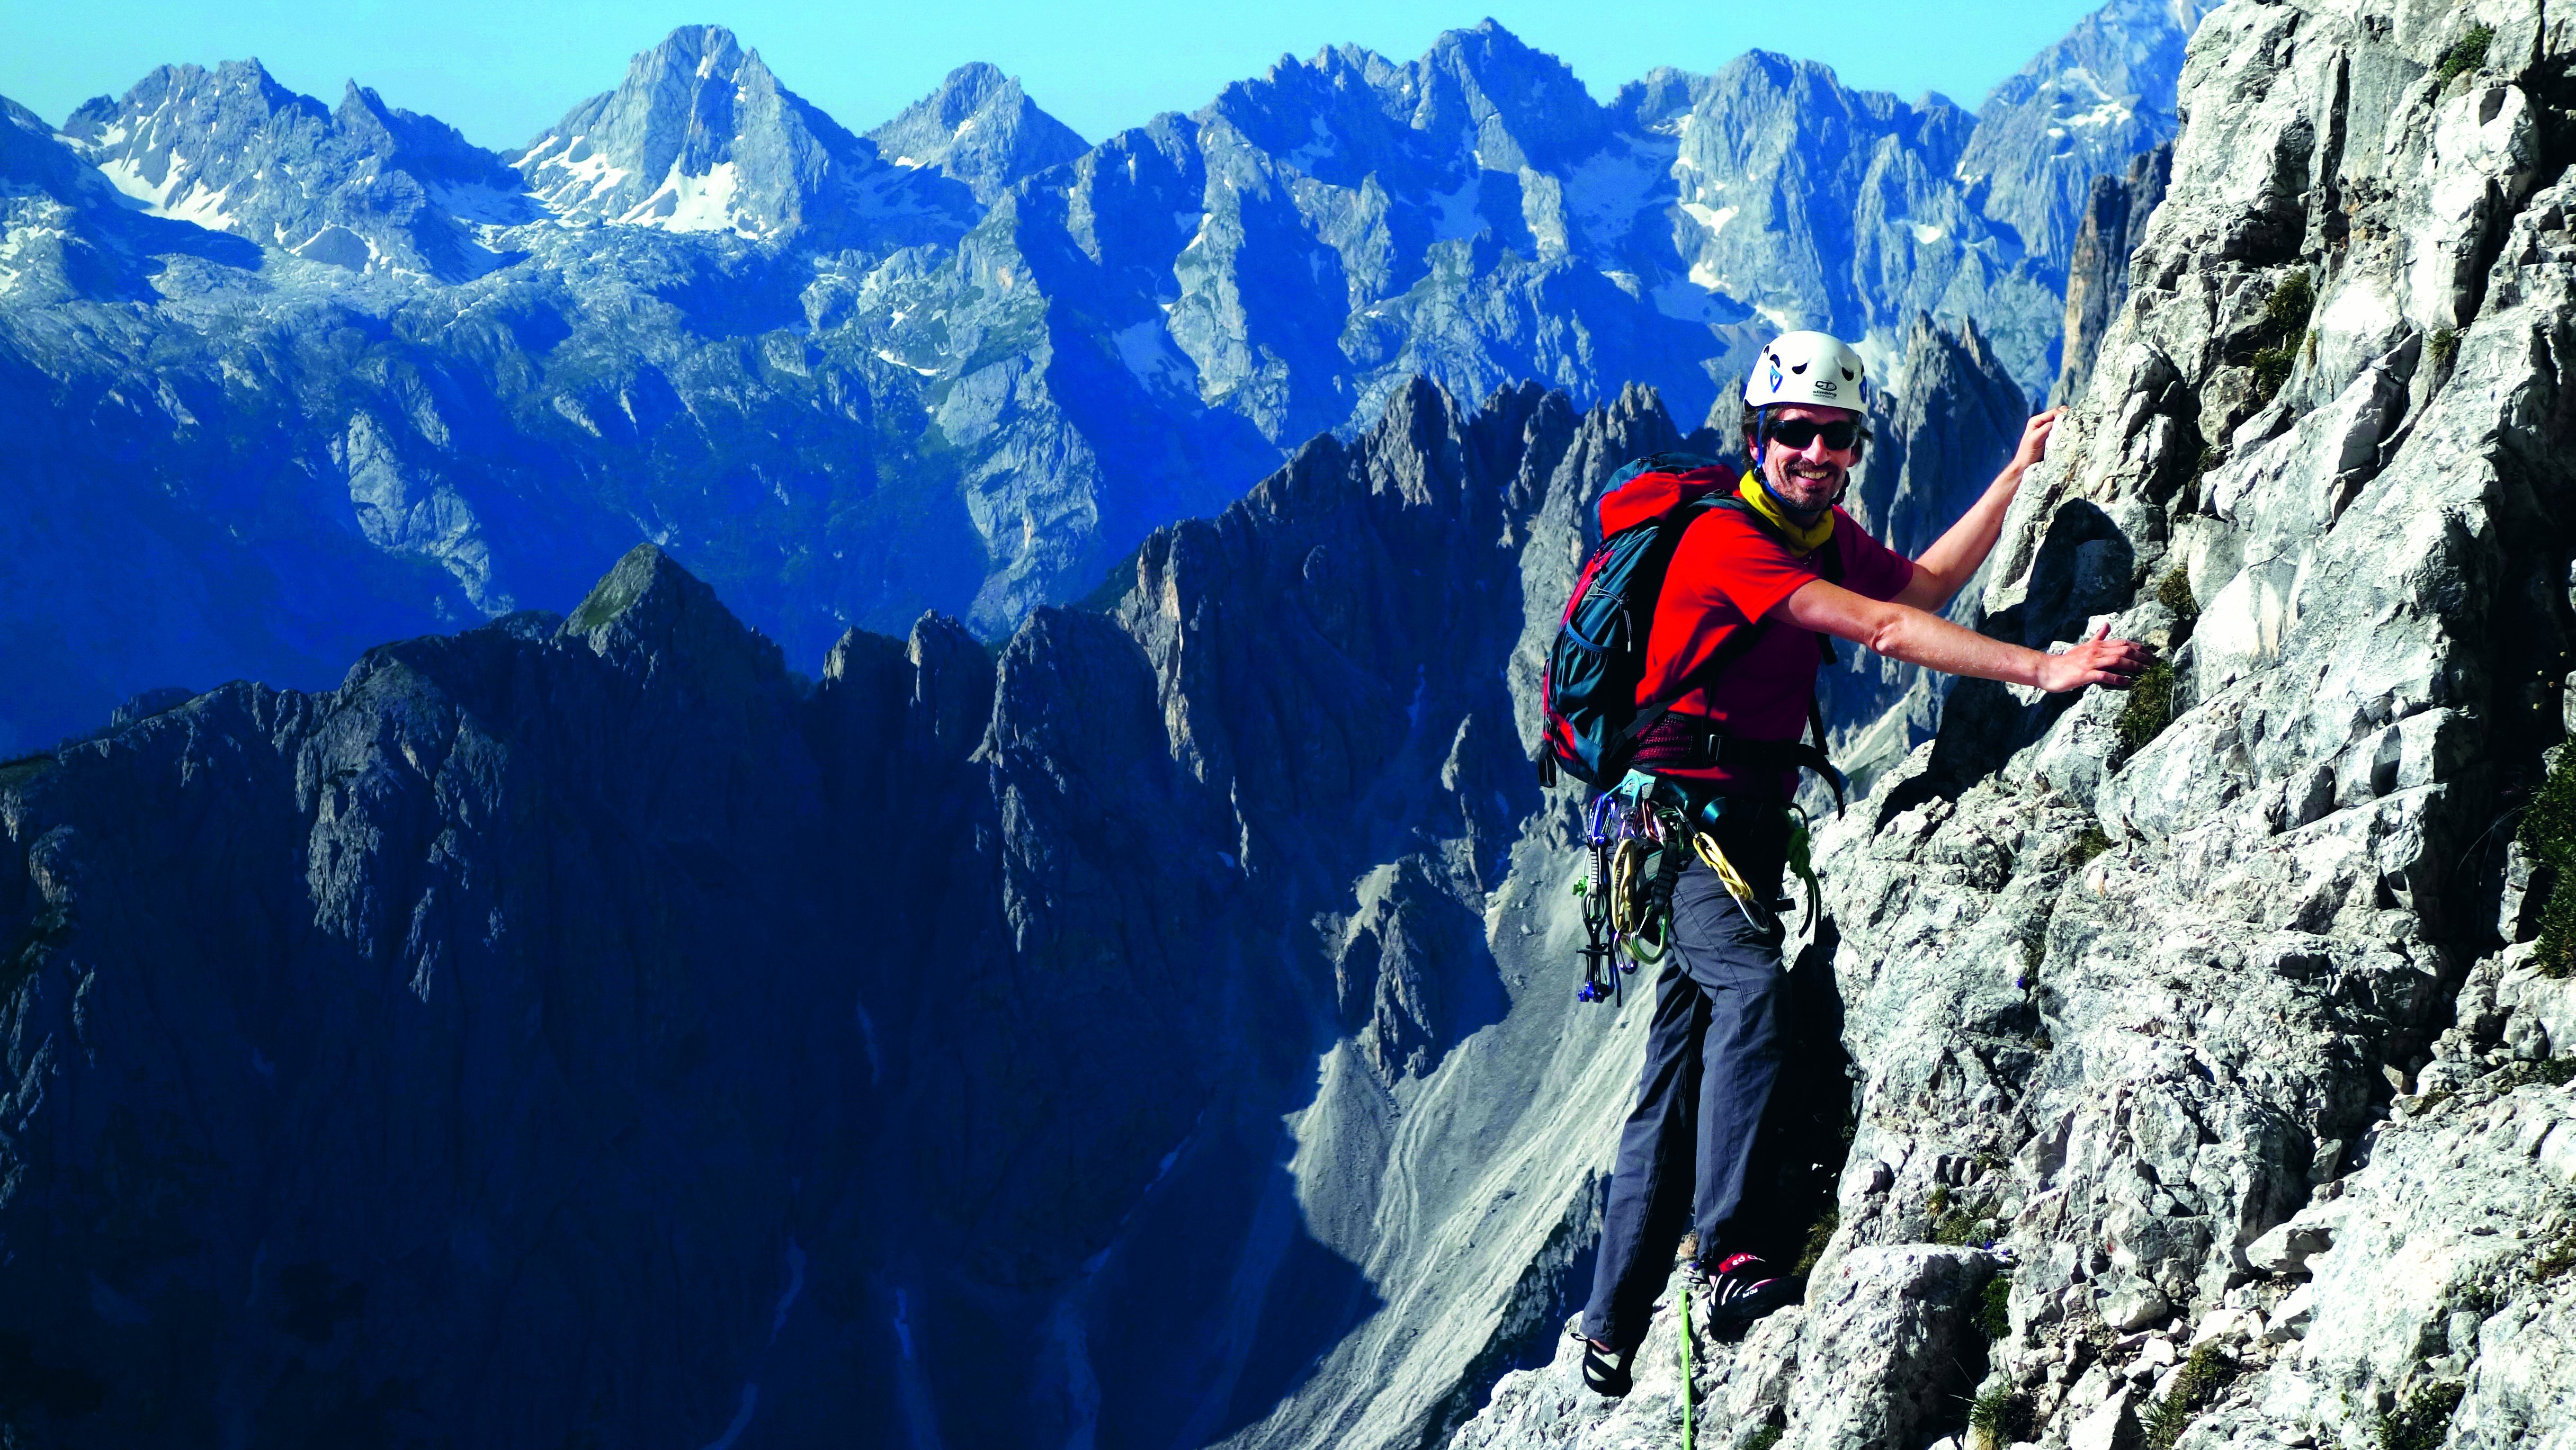 Raphael Haeger on the Three Peaks in the Dolomites.